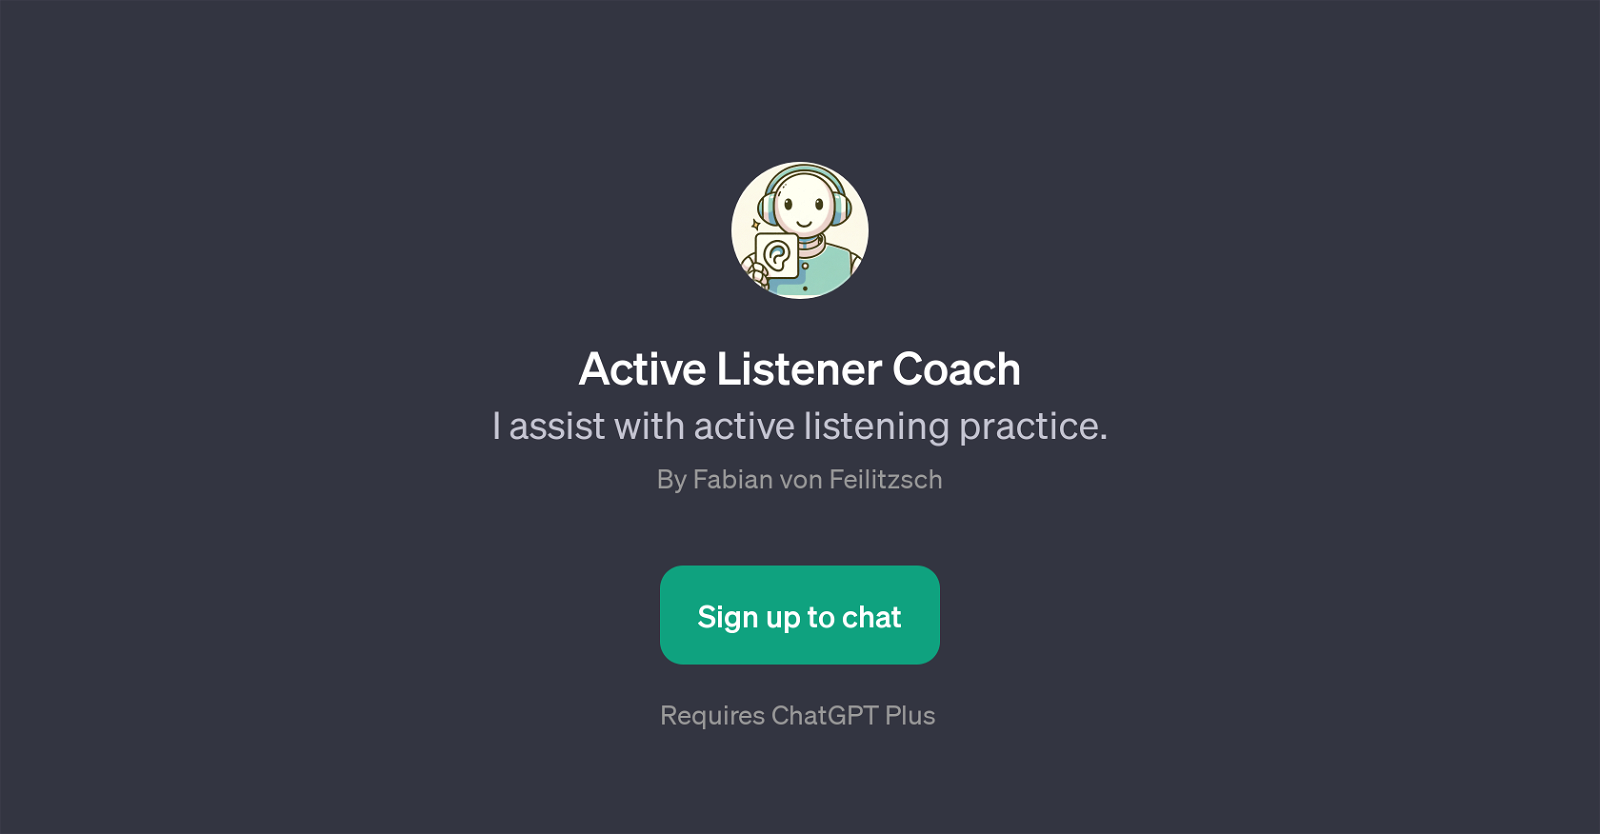 Active Listener Coach website